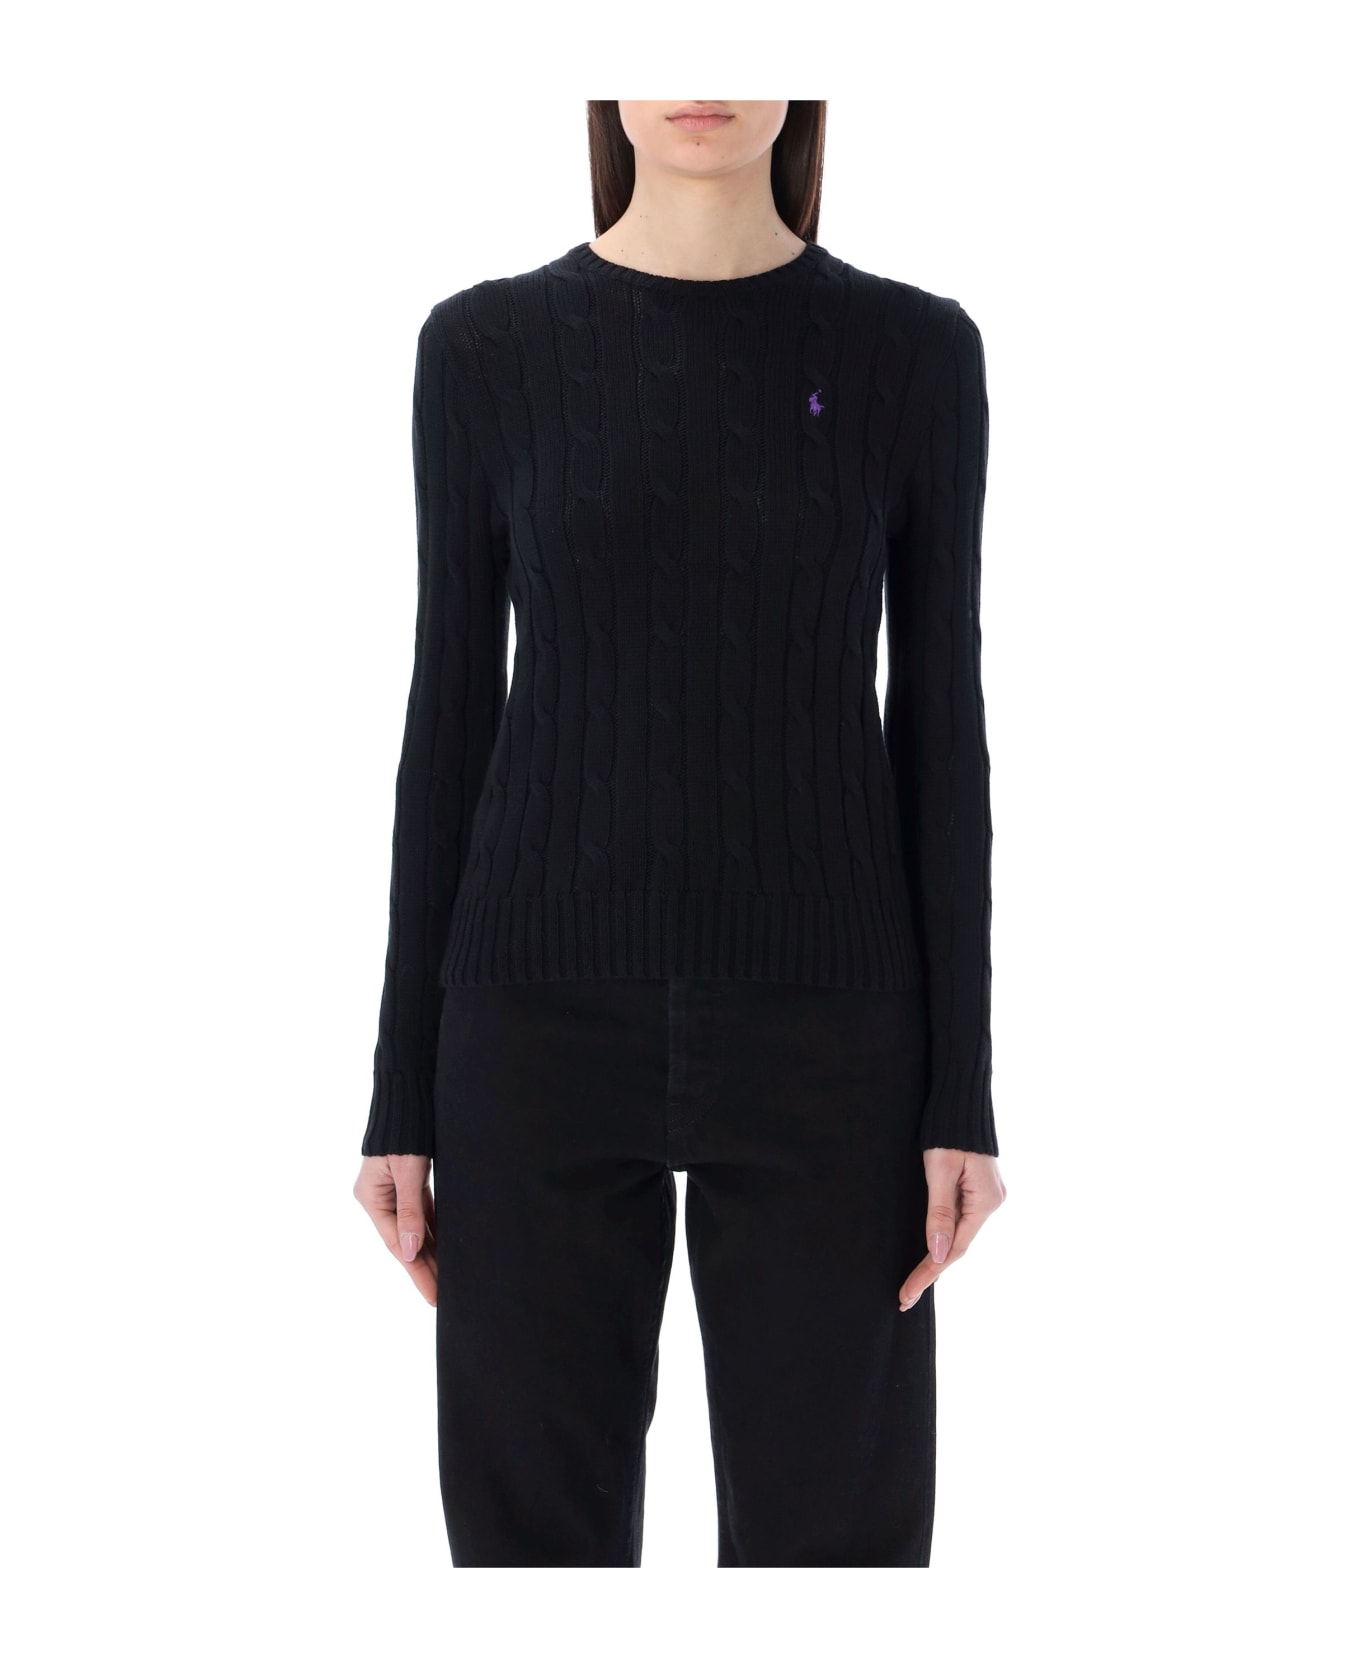 Polo Ralph Lauren Cable-knit Cotton Crewneck Sweater - BLACK